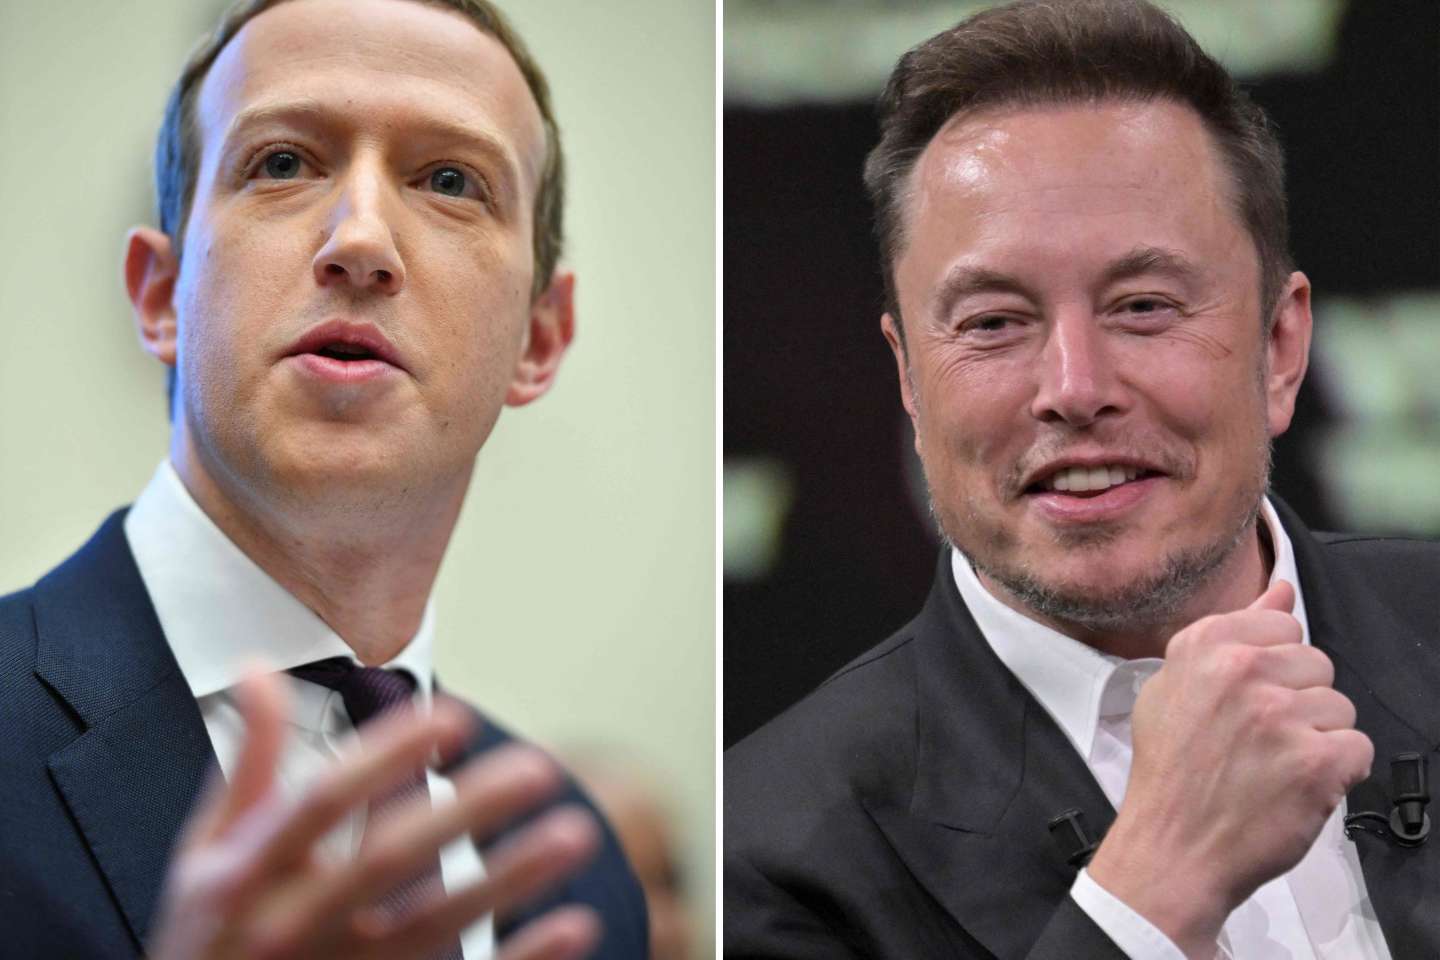 Mark Zuckerberg et Elon Musk se donnent rendez-vous pour un combat de MMA qui pourrait se tenir le 26 août